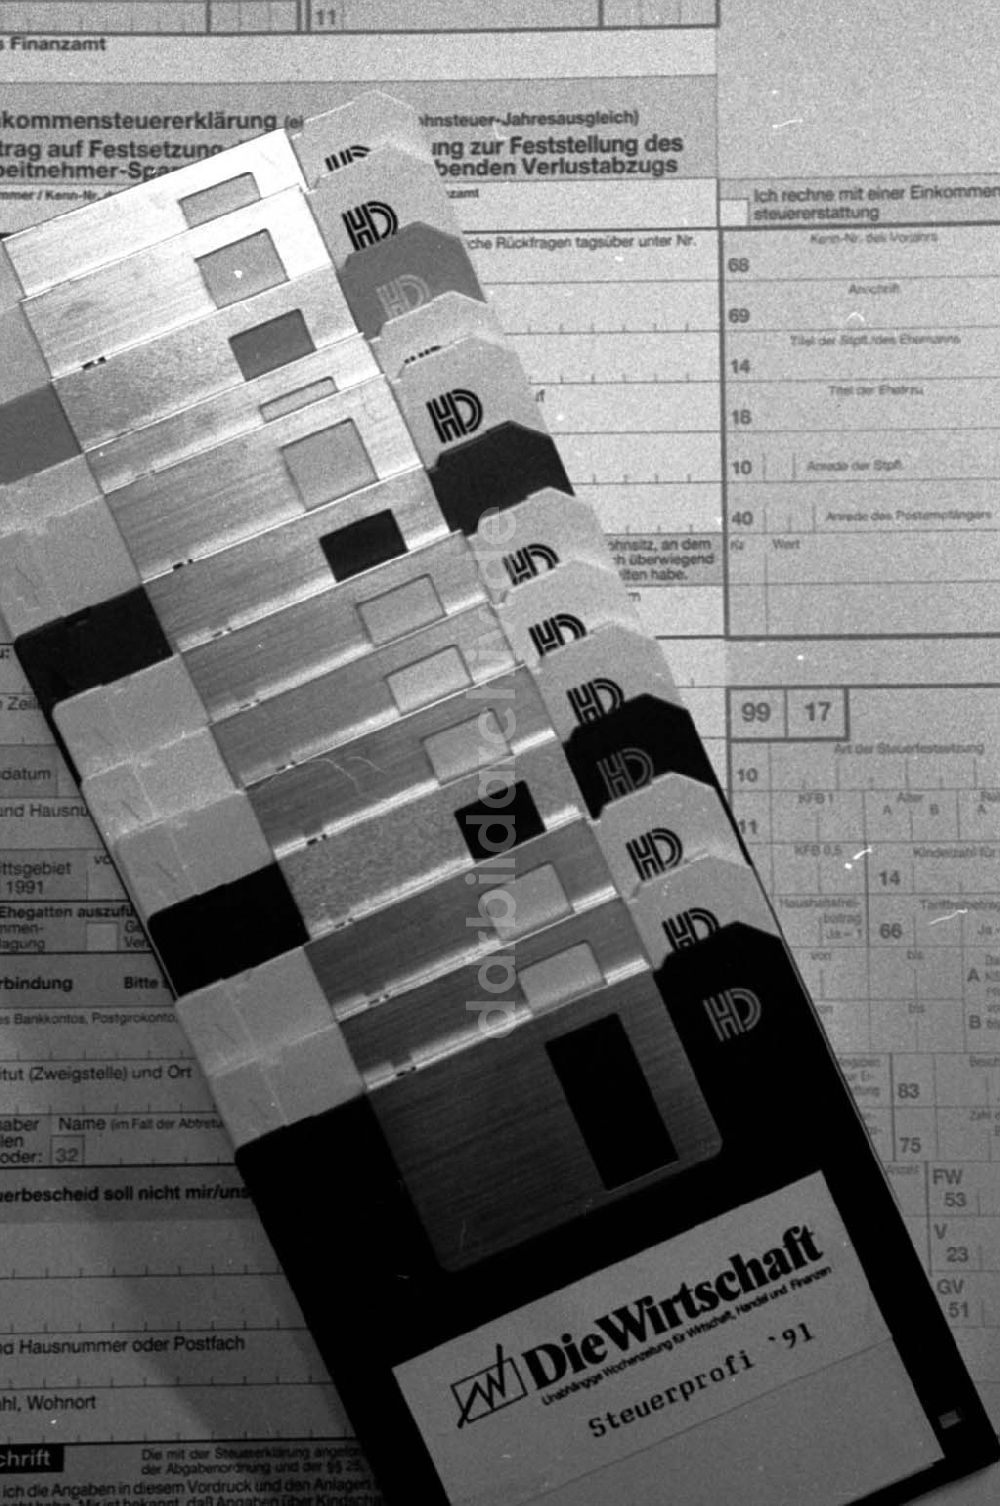 Berlin: Thema:Disketten Foto:Lange Umschlagsnummer: 1992-24